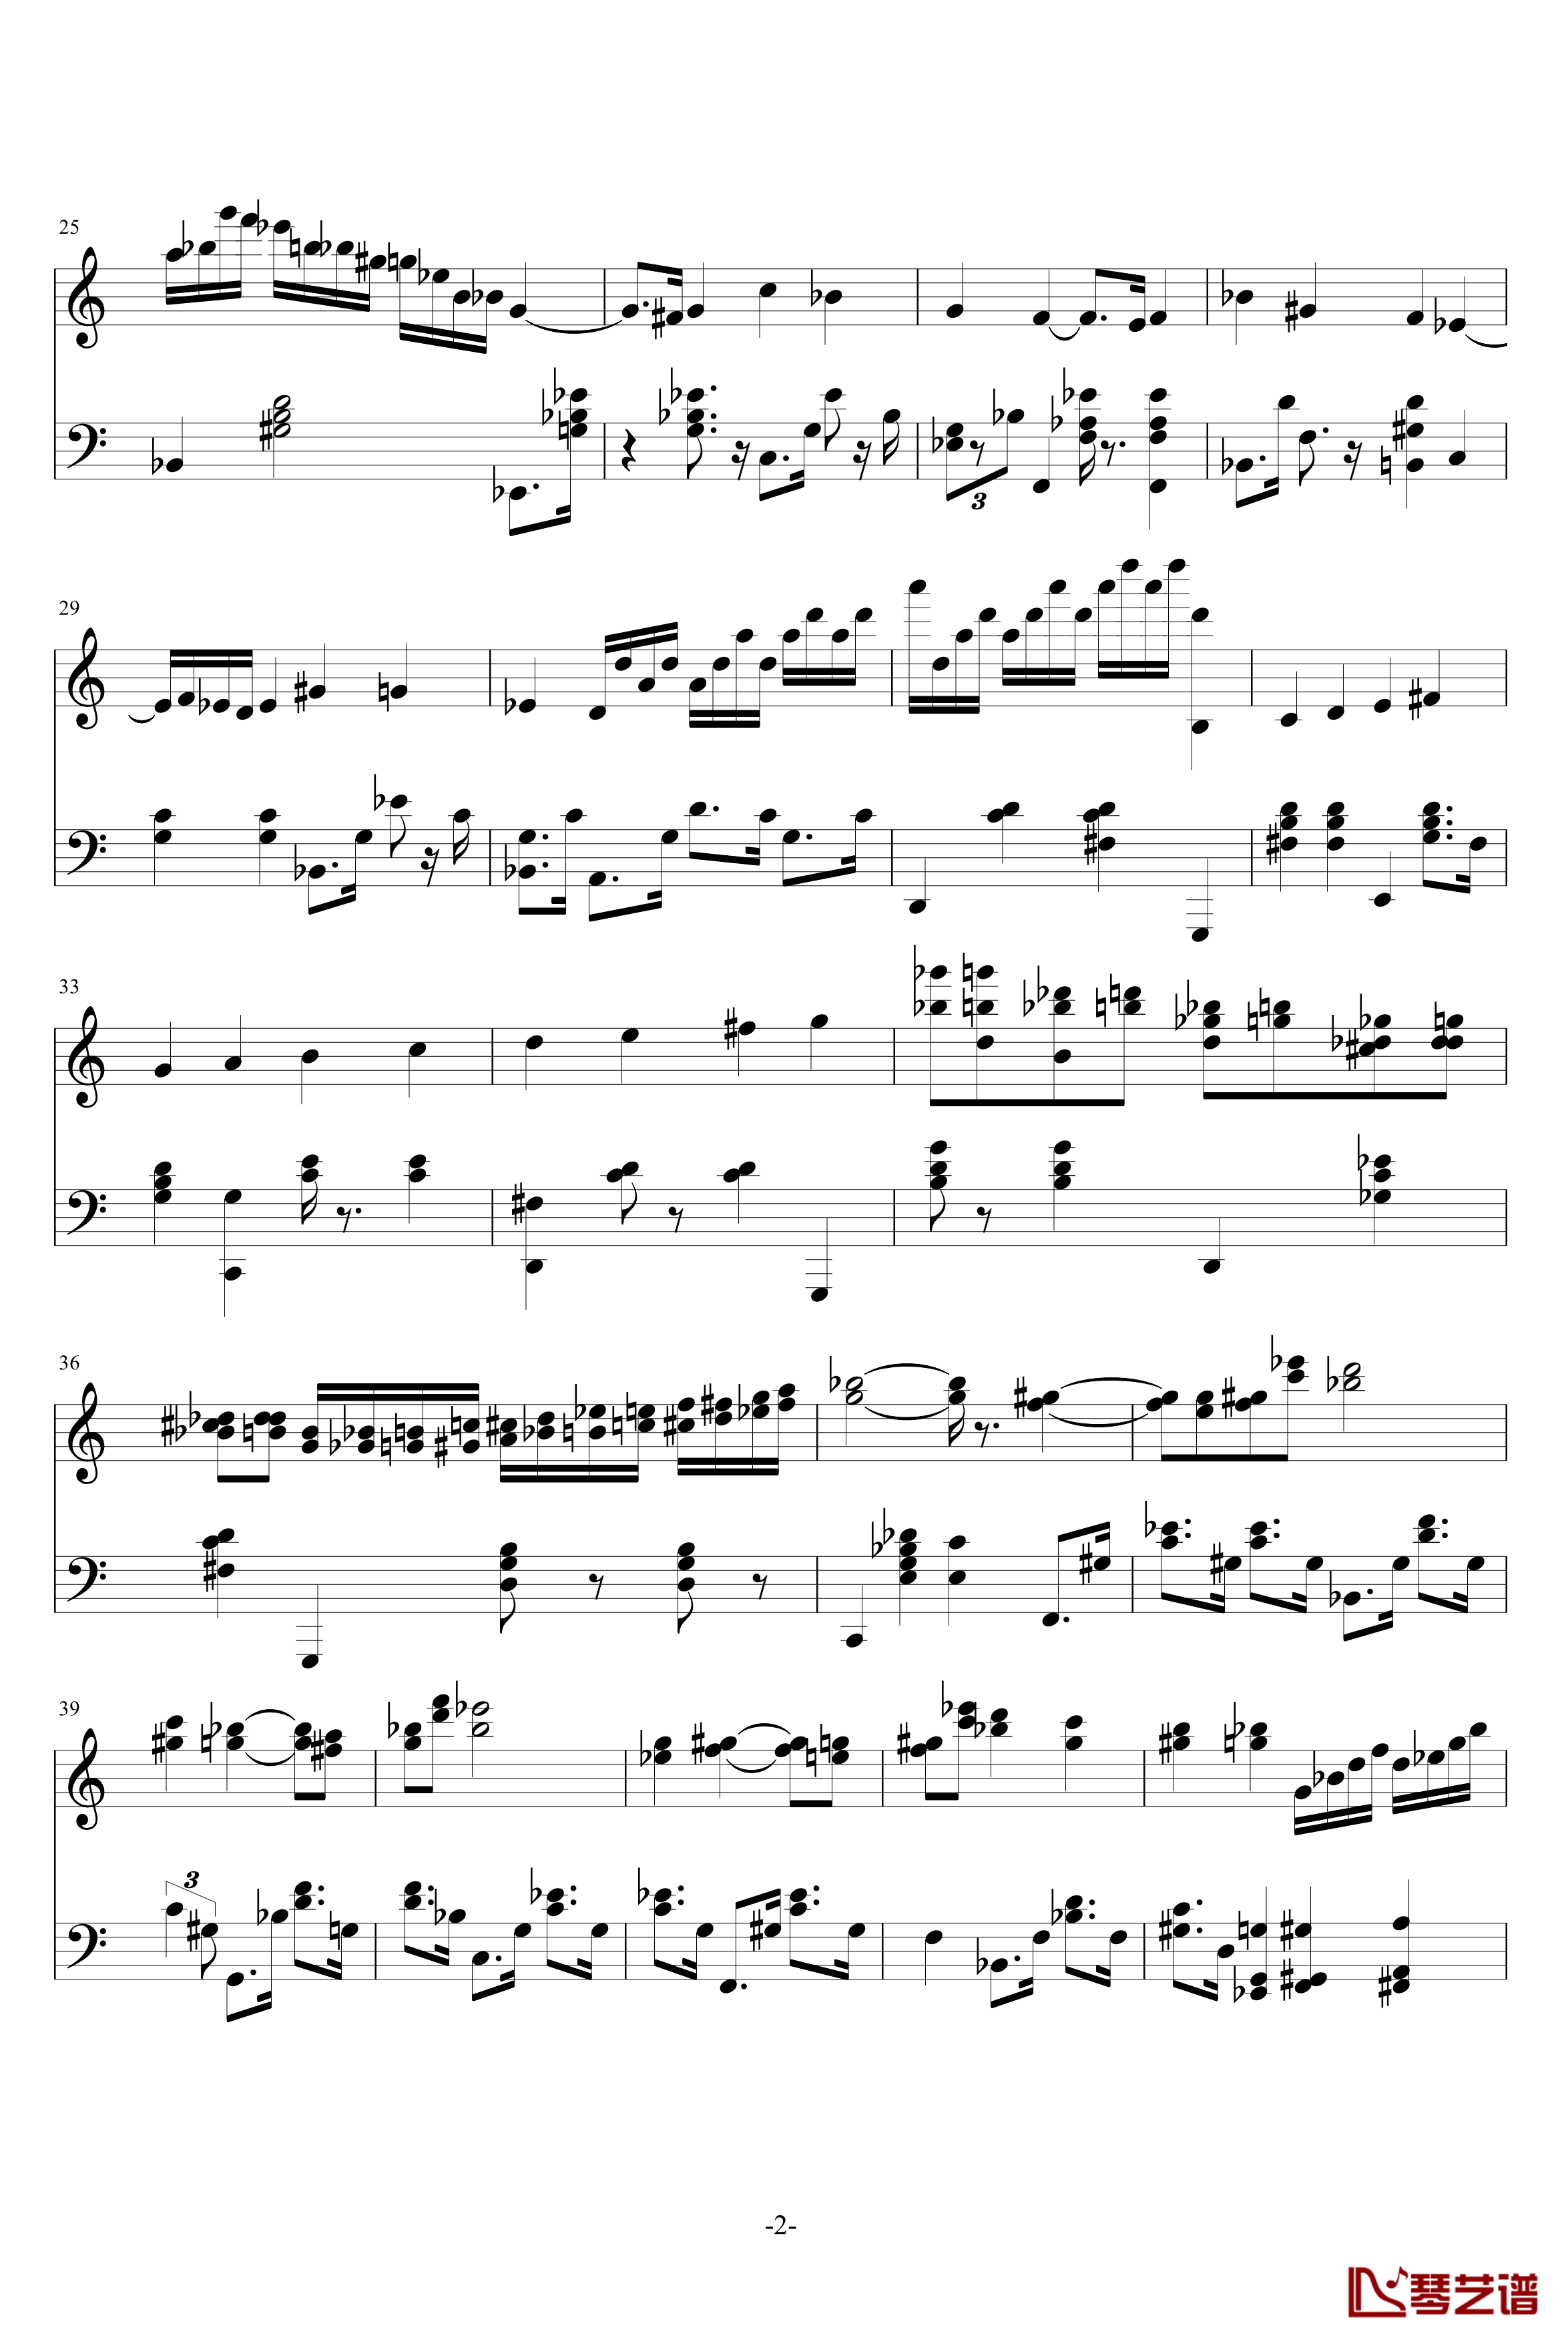 Magic Waltz钢琴谱-基本接近原版-海上钢琴师2